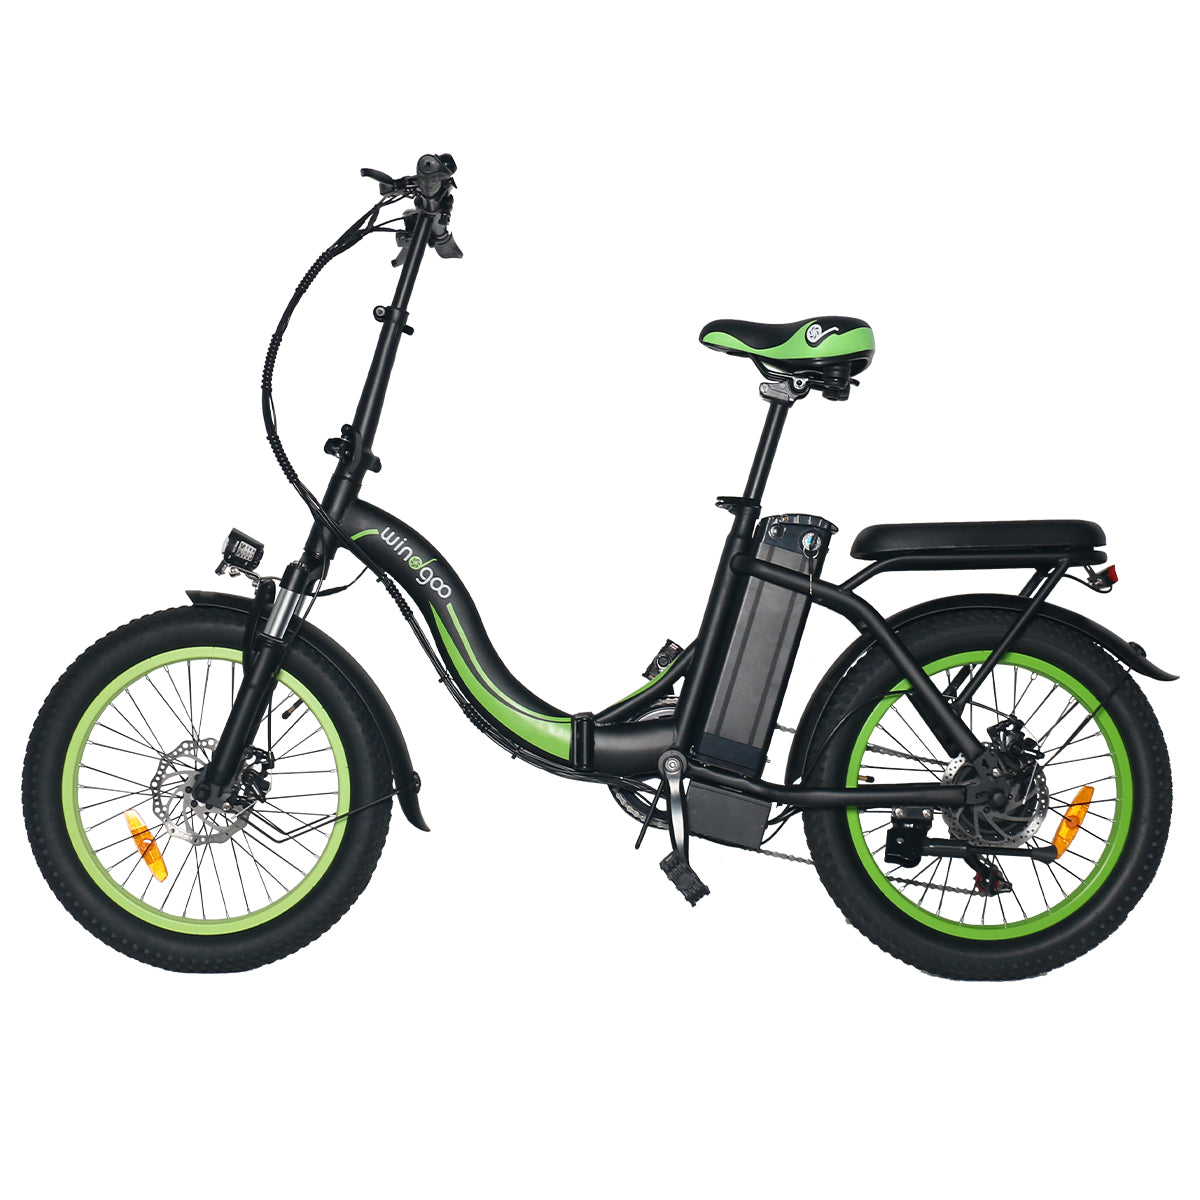 ⚡FLASH SALE⚡ Windgoo E20 Foldable Portable E-Bike